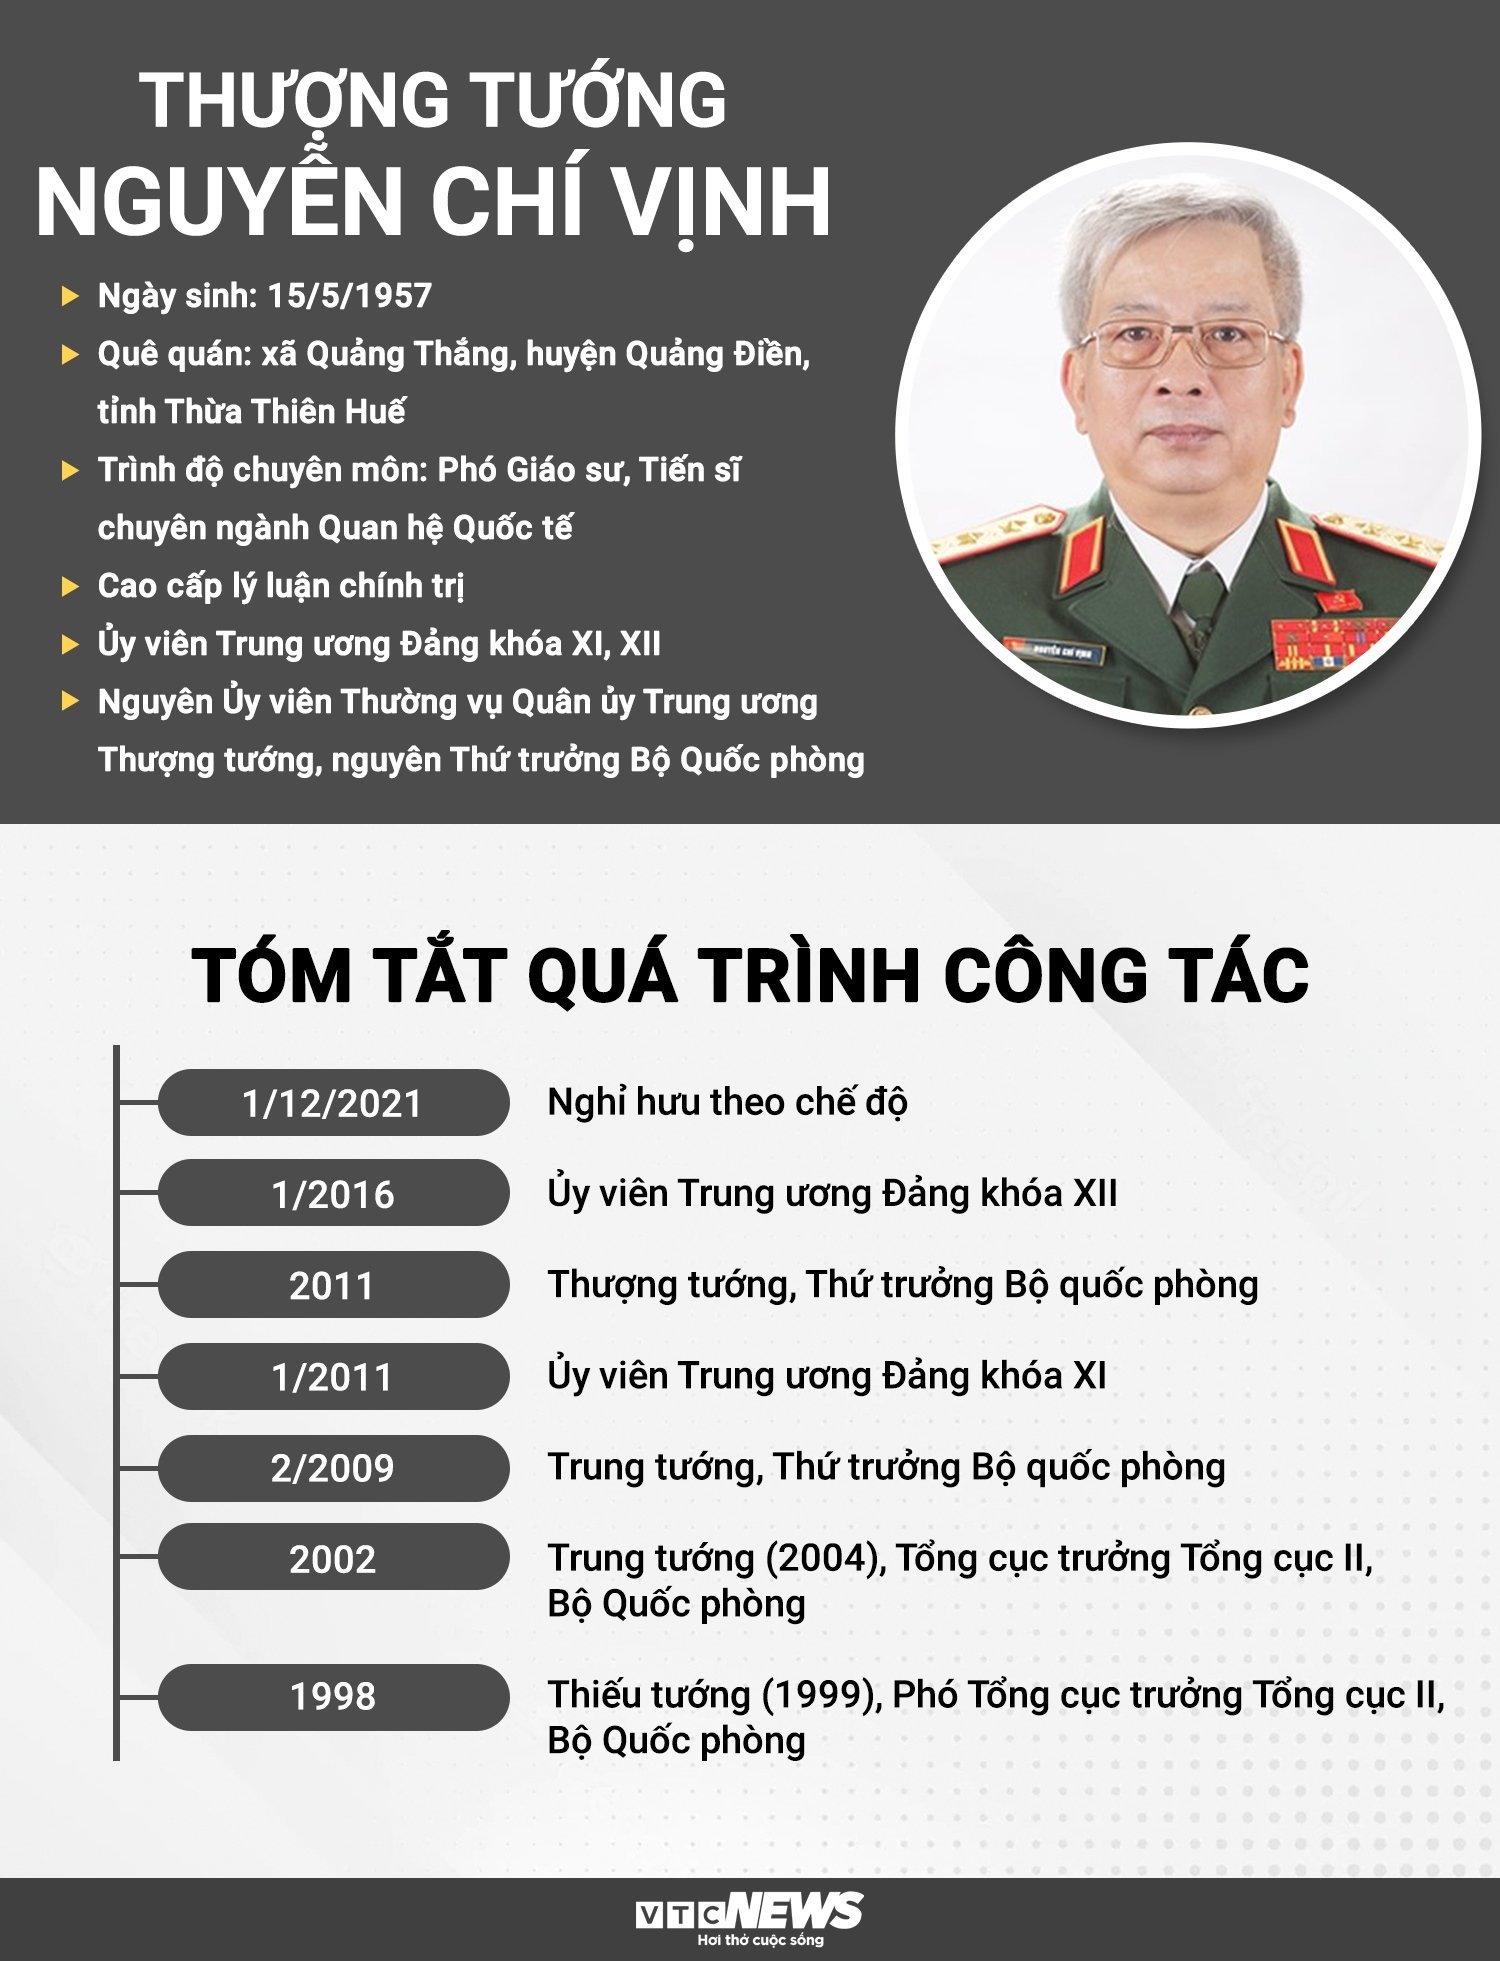 Sự nghiệp của Thượng tướng Nguyễn Chí Vịnh - Ảnh 1.